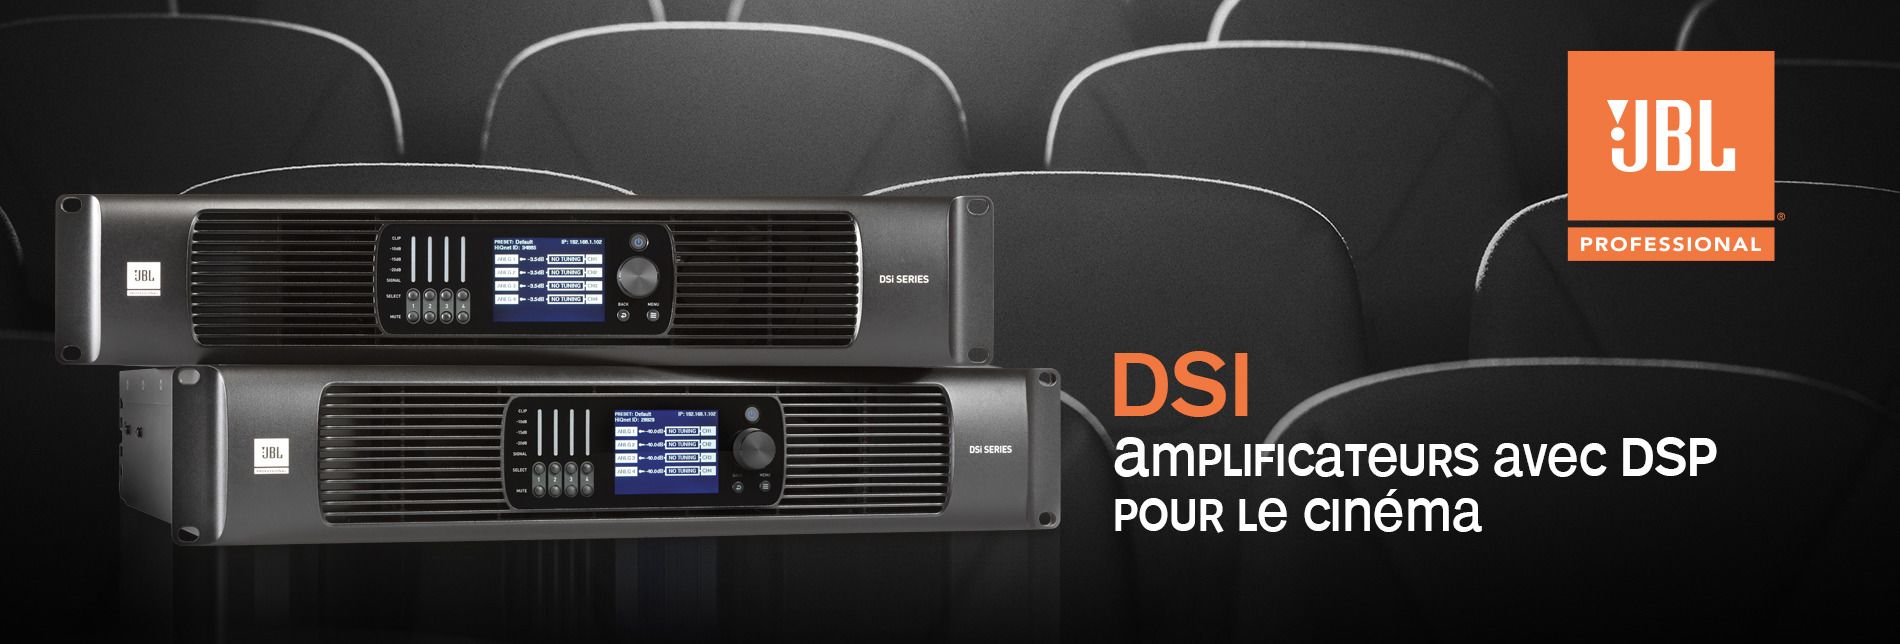 Amplificateurs avec DSP pour le cinéma